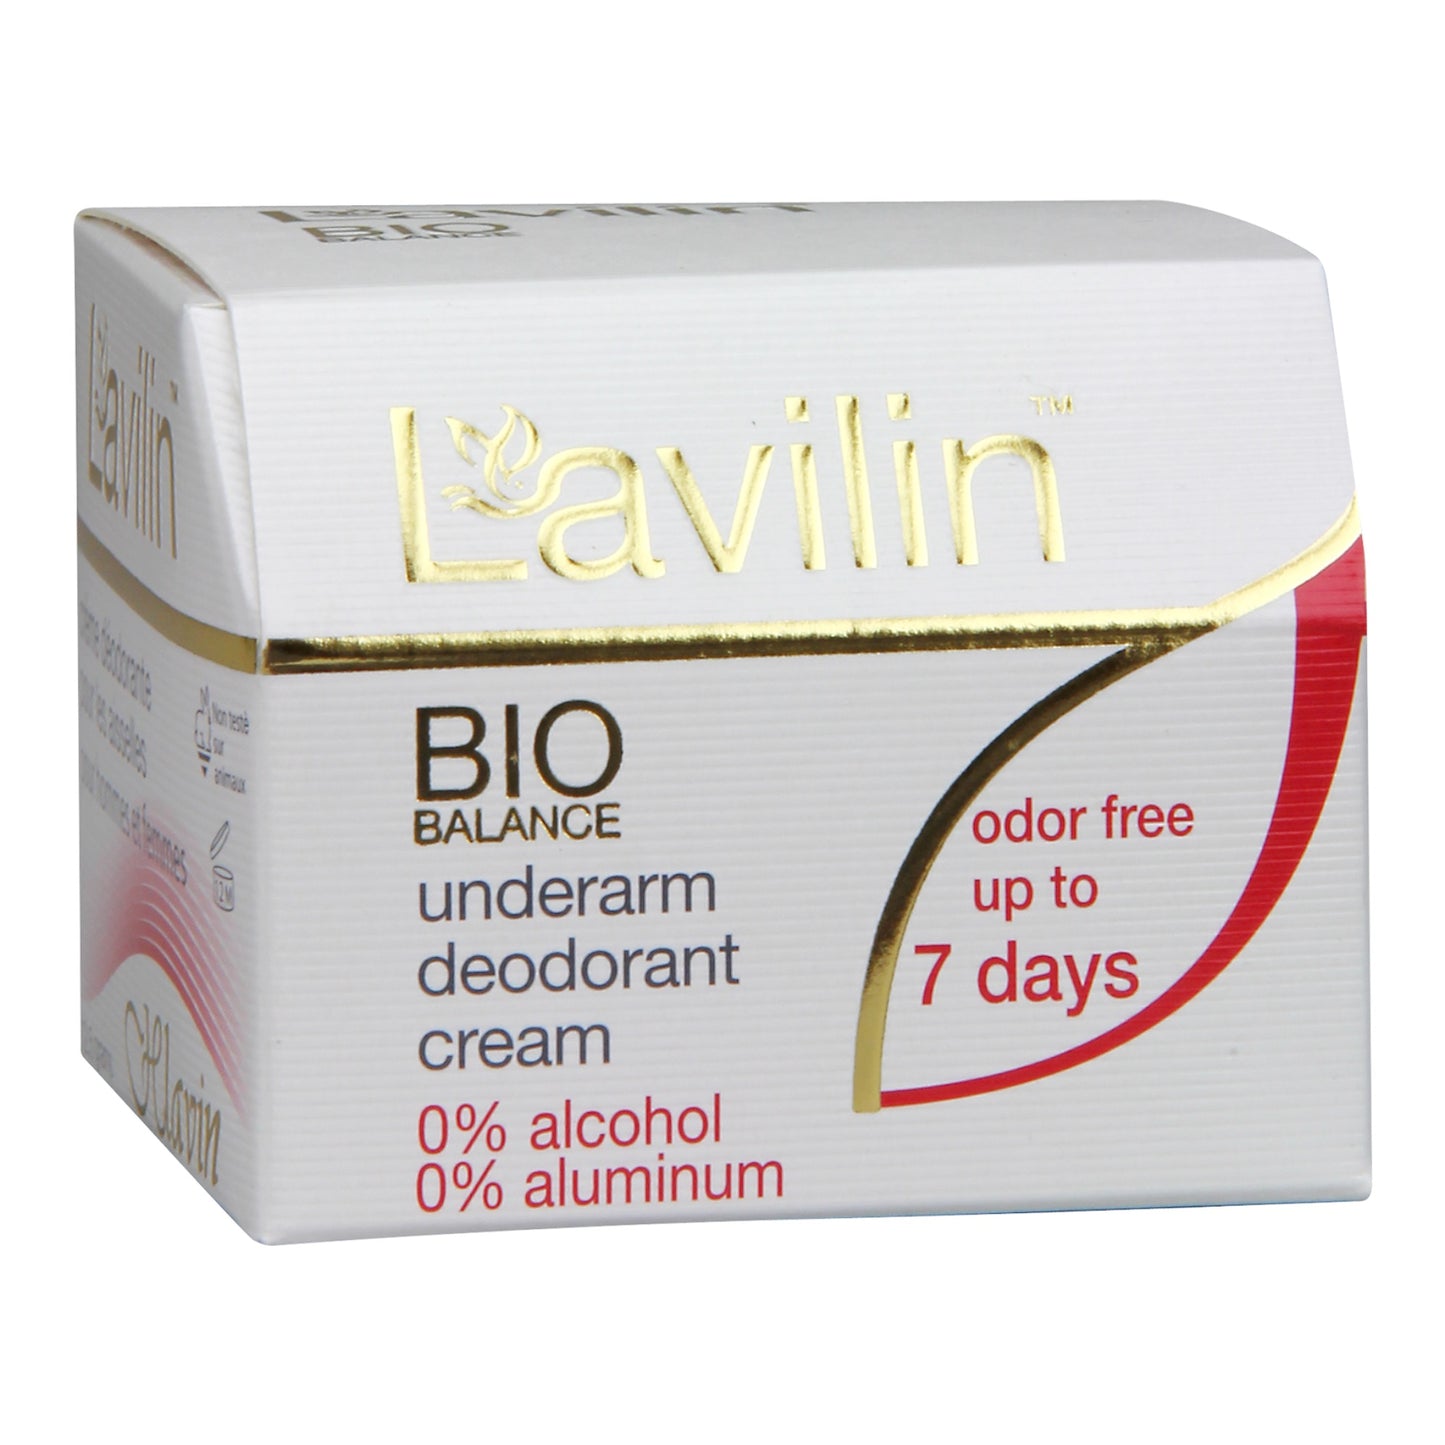 Lavilin Underarm Deodorant cream